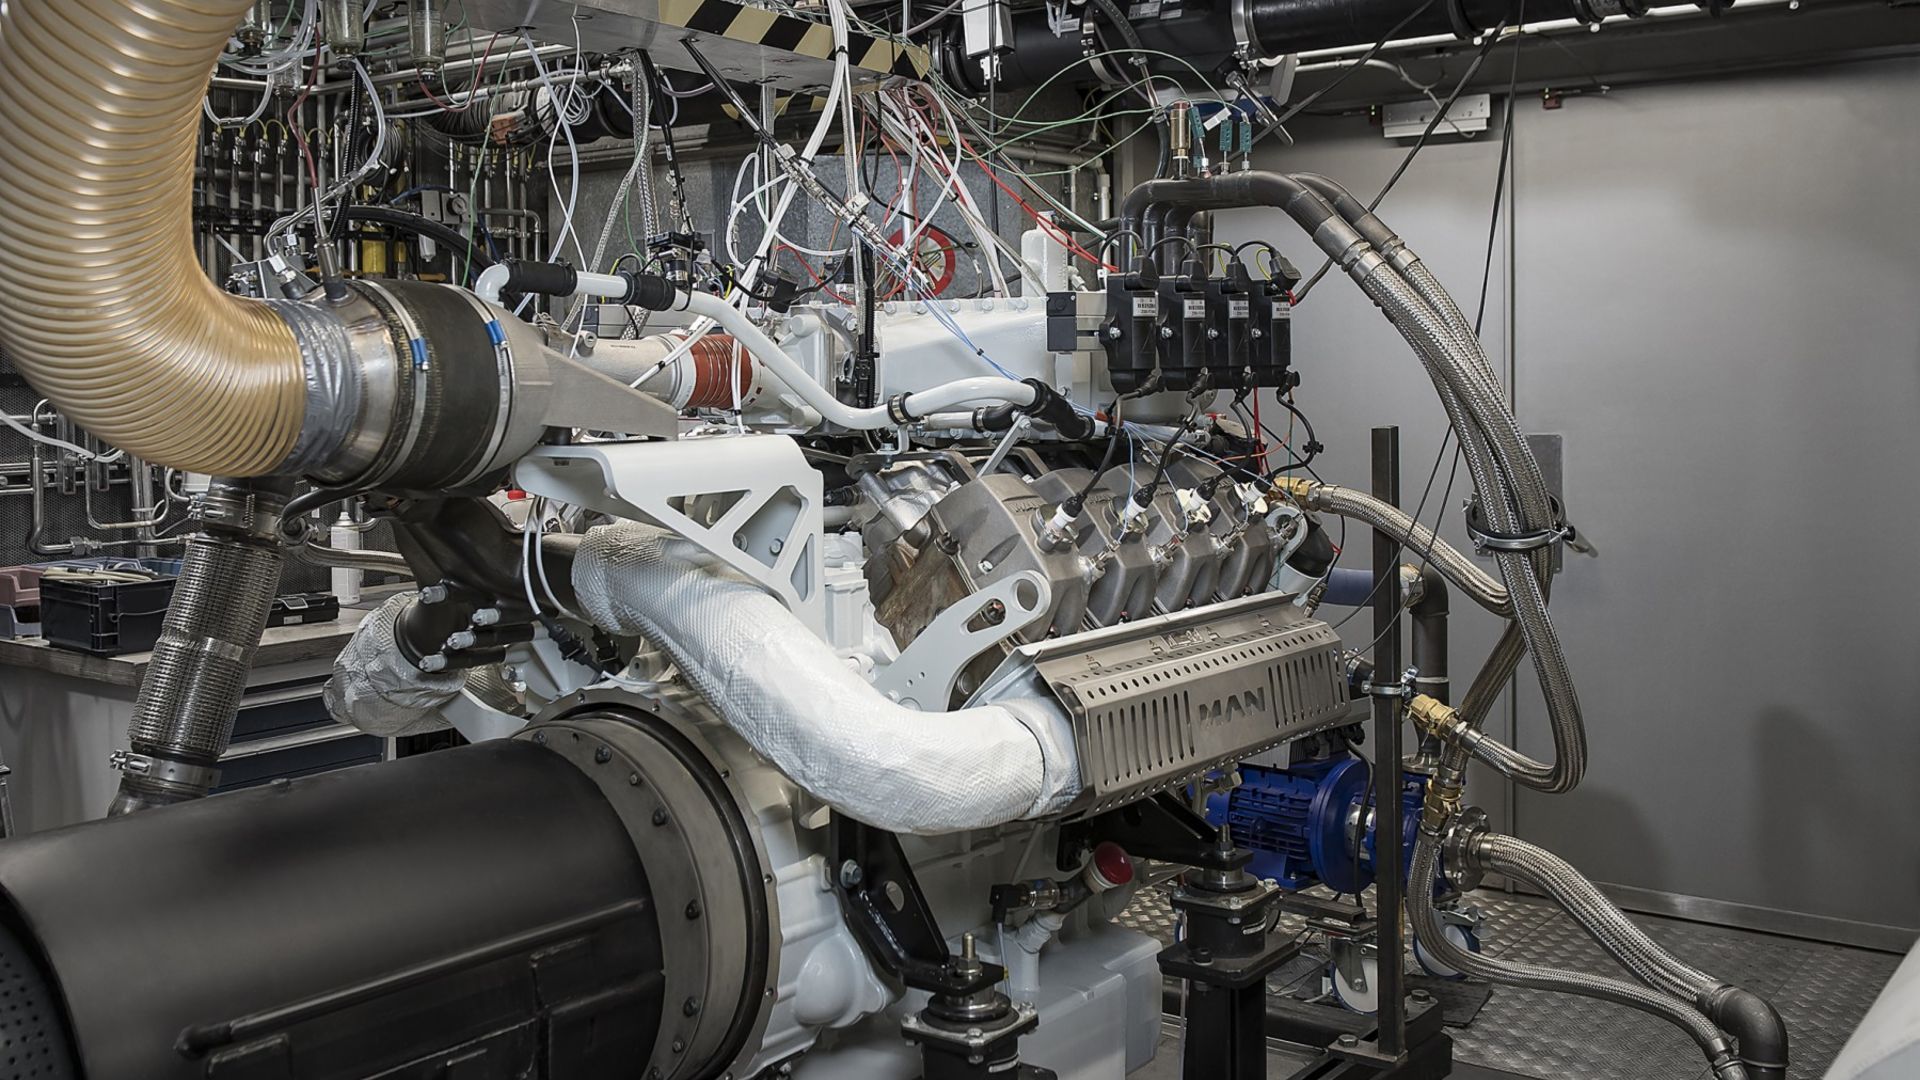 MAN Engines: Wasserstoff jetzt auch bei Stationärmotoren zur Kraft-Wärme-Kopplung

Erster Motor am Prüfstand; Typ MAN H3268; Leistungsklasse und Wirkungsgrad wie bei Erdgasmotor; H2-Readiness; Wasserstoff-Erfahrung bei MAN Engine